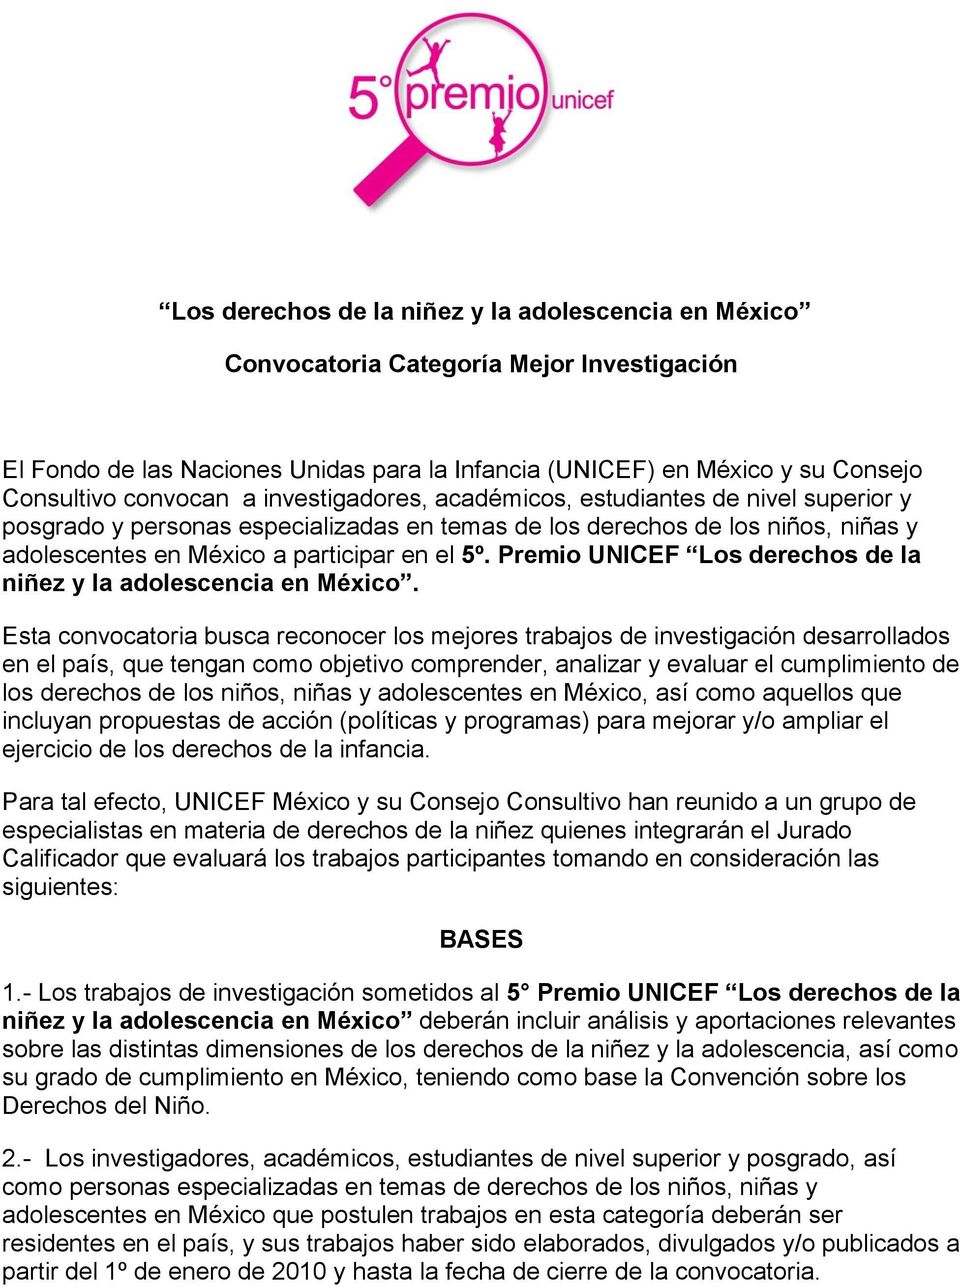 Premio UNICEF Los derechos de la niñez y la adolescencia en México.